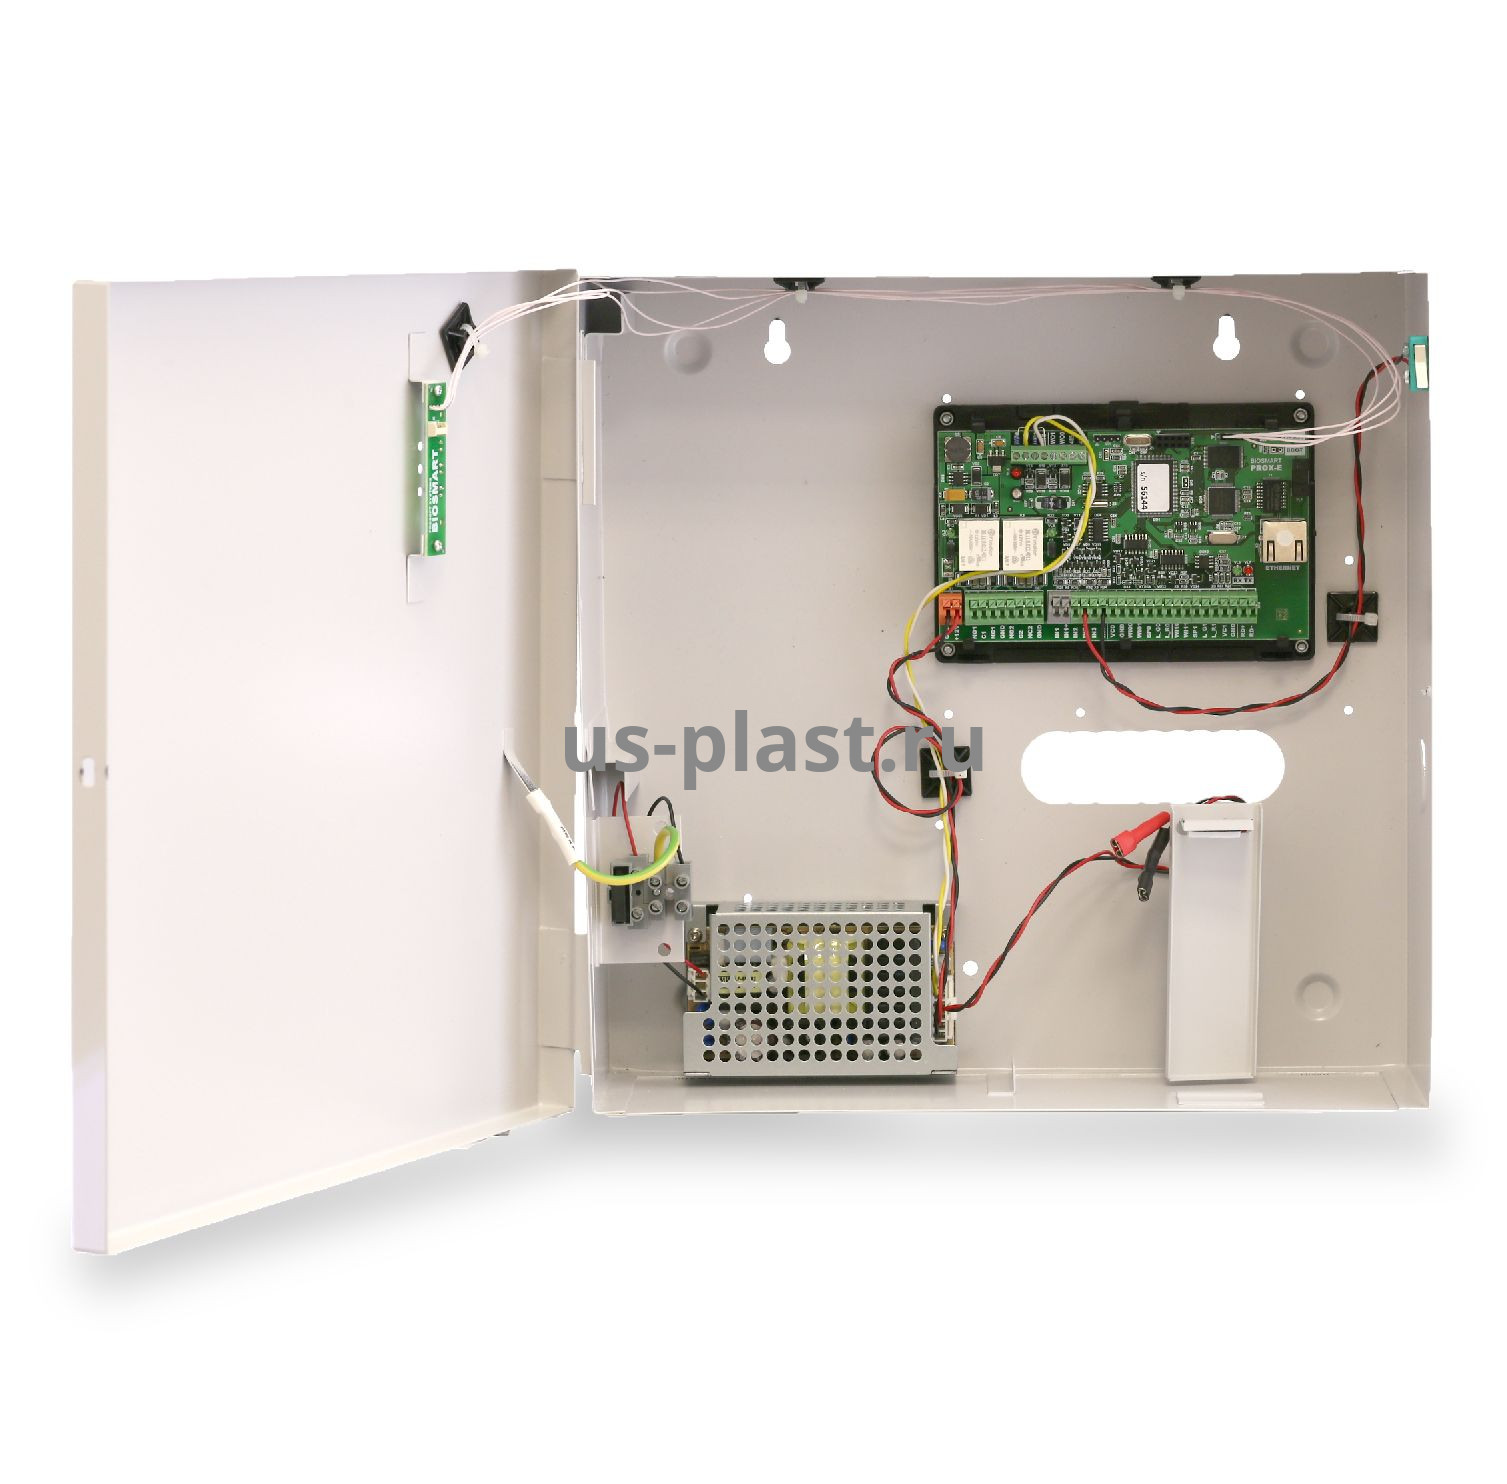 BioSmart UniPass-EX, биометрический сетевой контроллер управления доступом